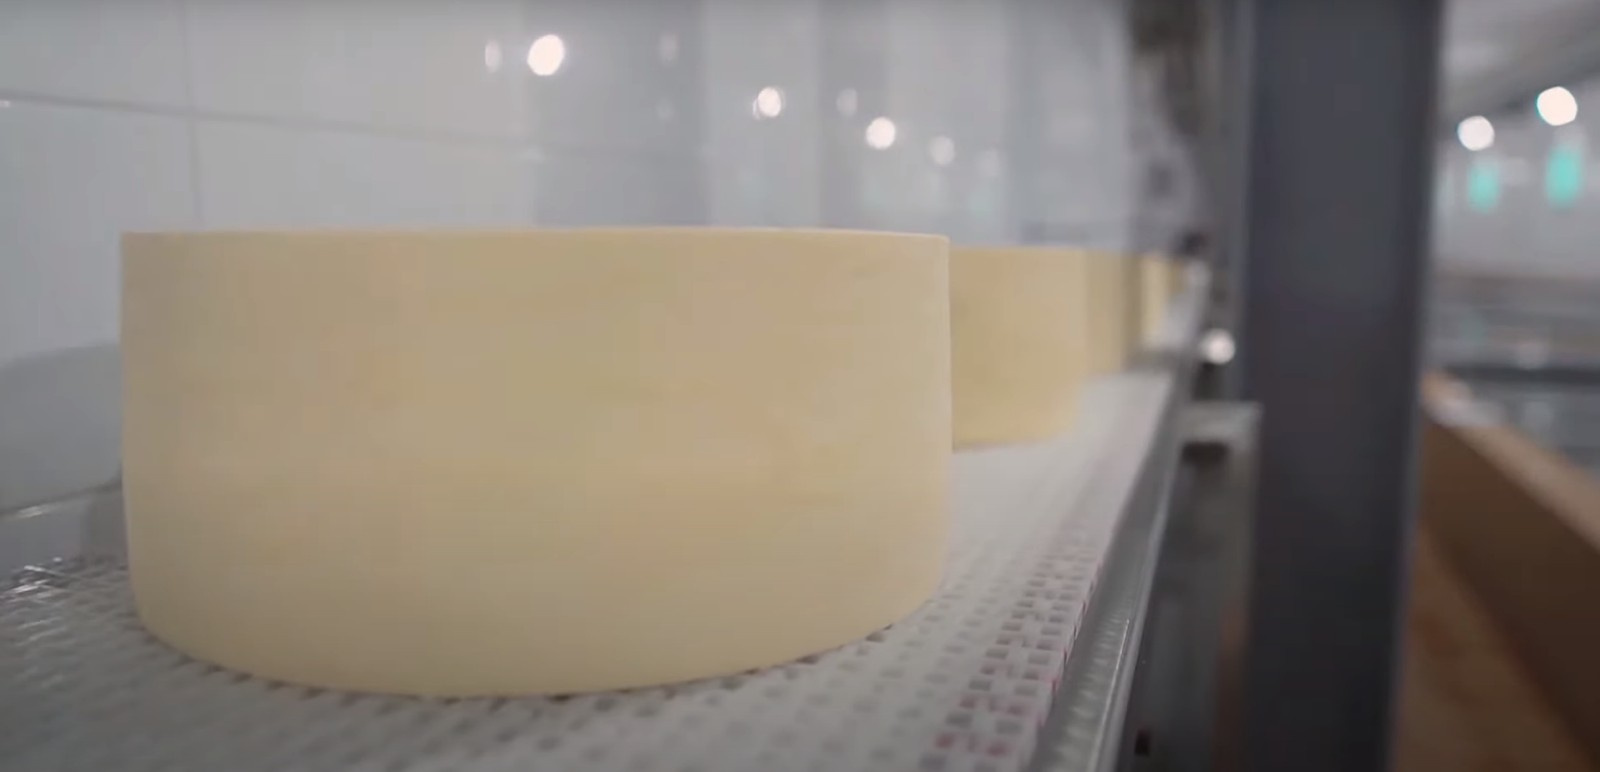 Юговской комбинат — один из крупнейших производителей качественной продукции из натурального молока